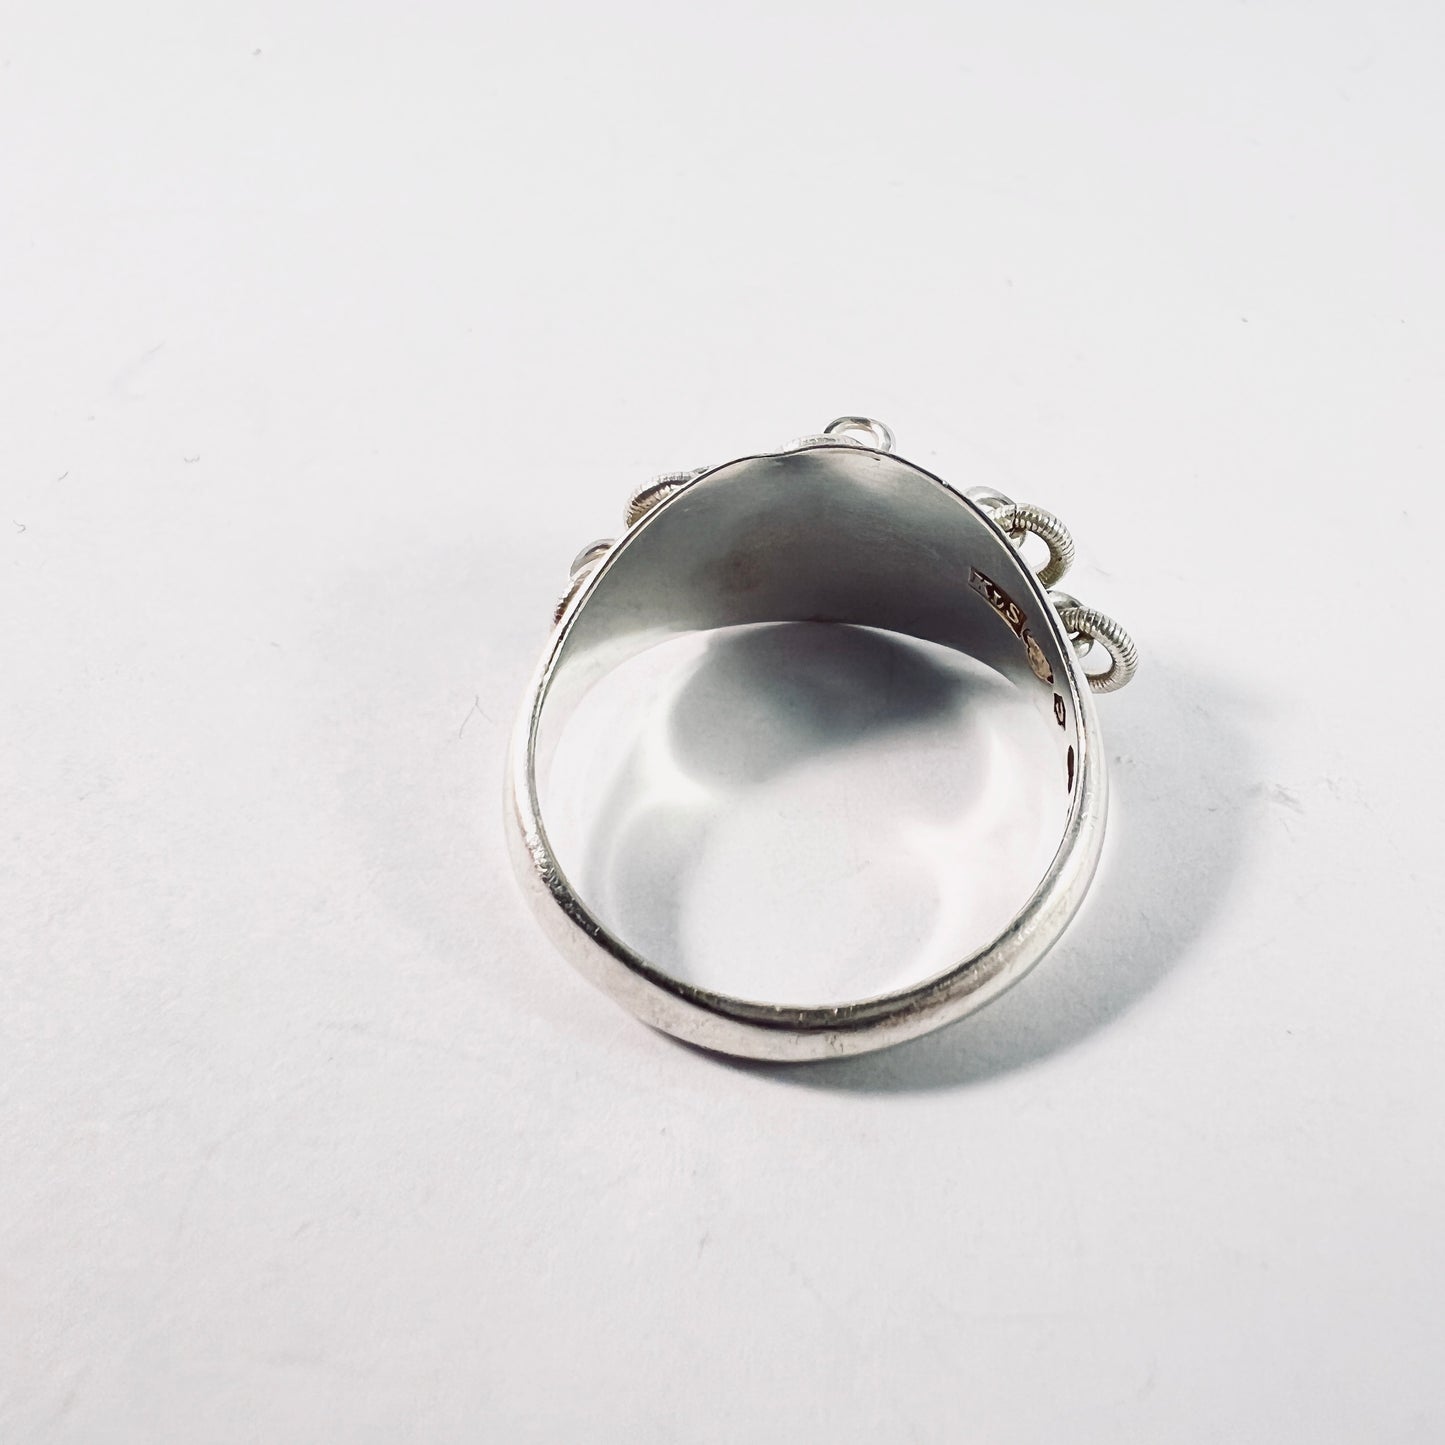 Karl Stenudd, Sweden 1937. Vintage Solid Silver Traditional Sami Laplander Ring.